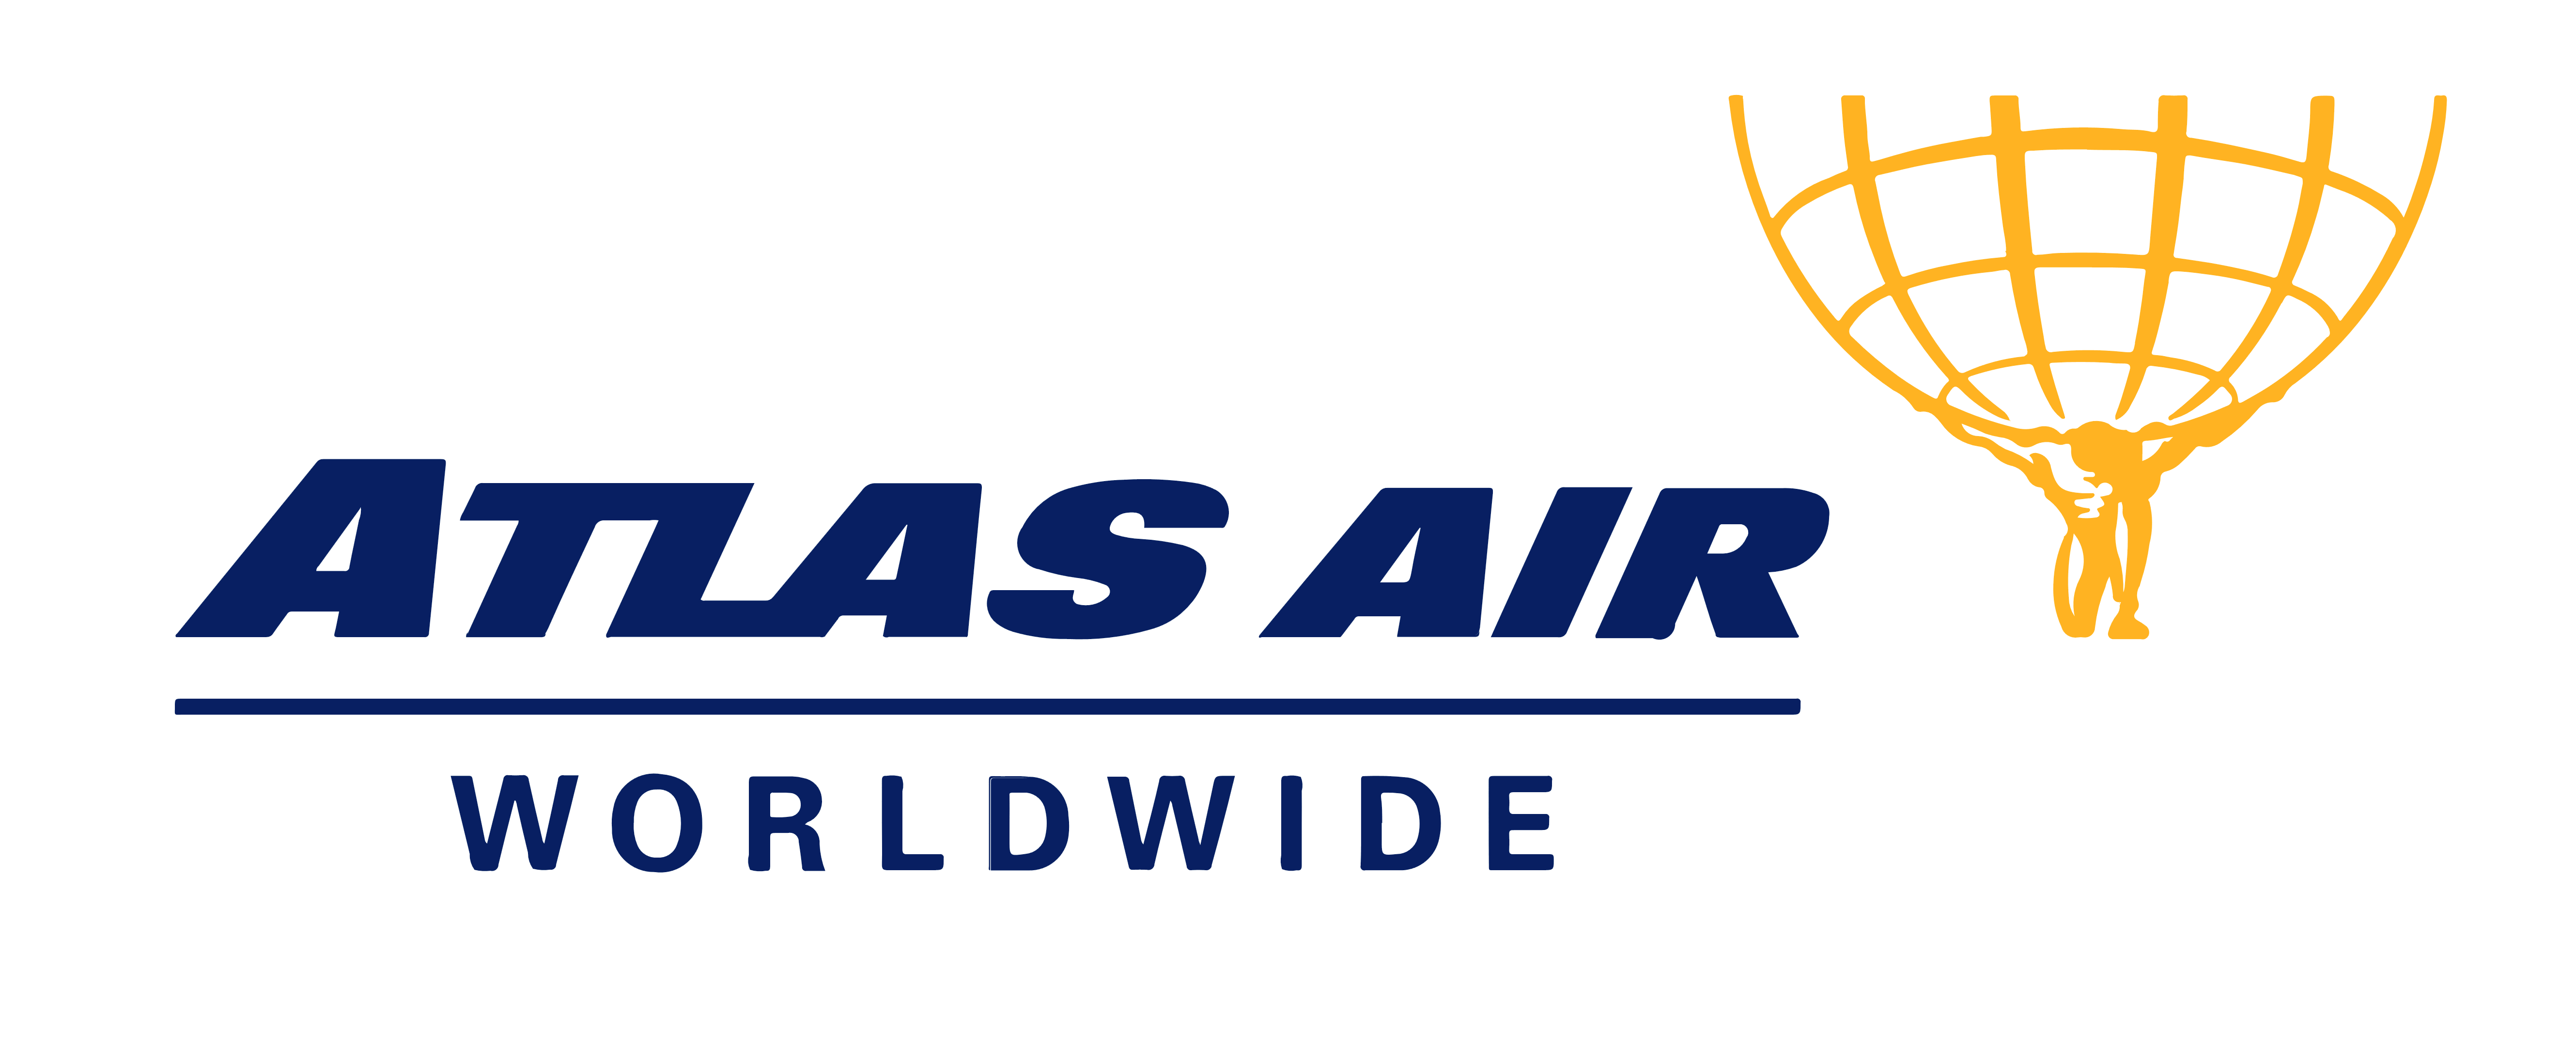 Atlas Air logo, logotype